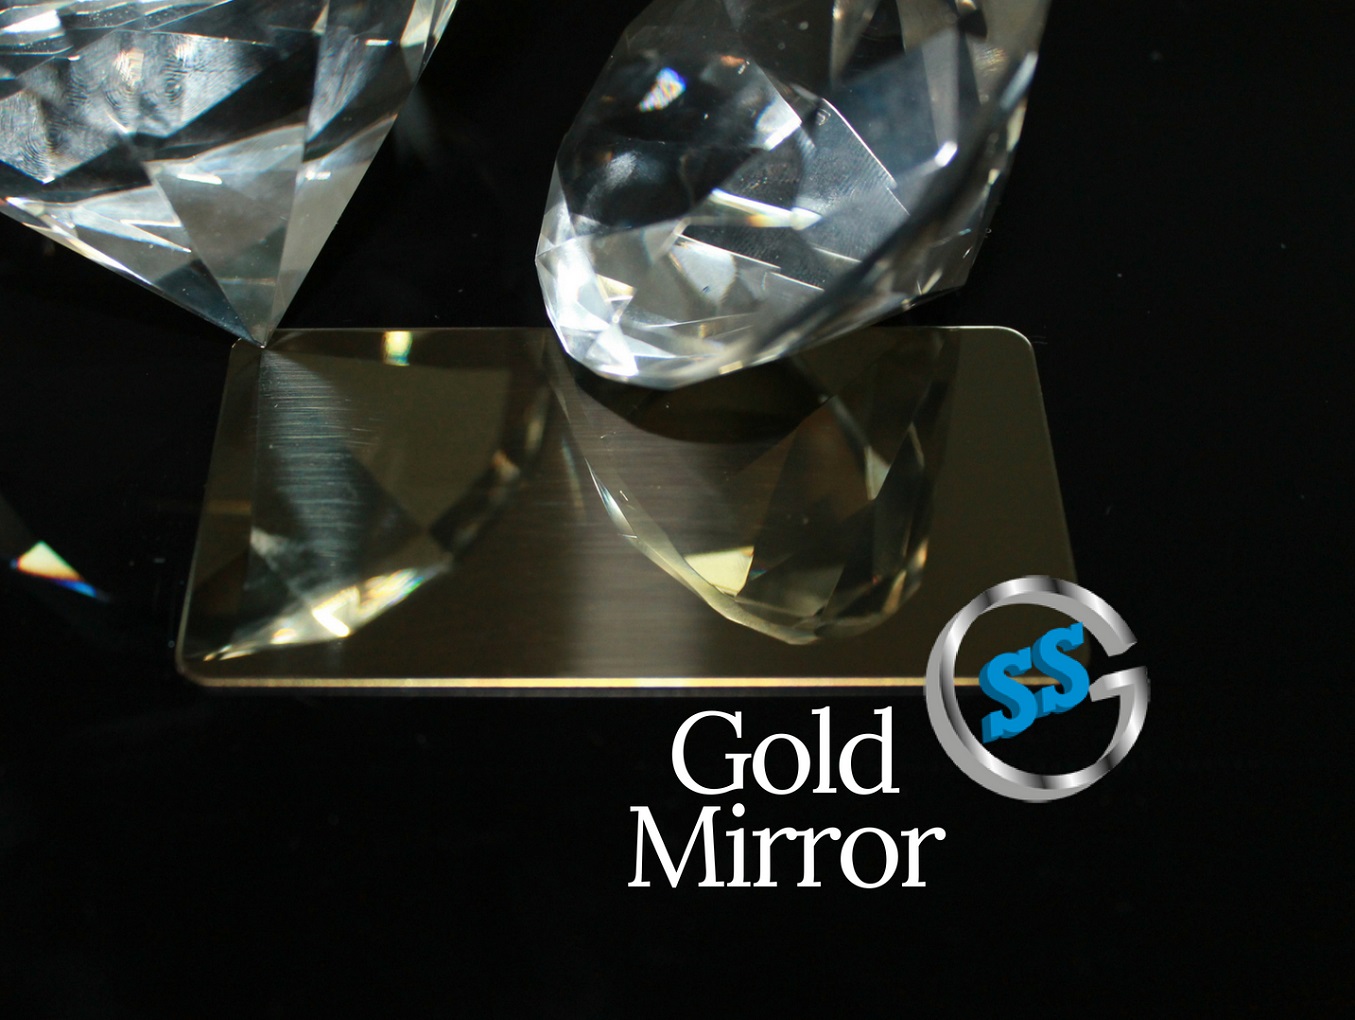 Inox colorato galvanico ColourTex Gold Mirror, inox elettro-colorato gold mirror, inox colorato oro a specchio